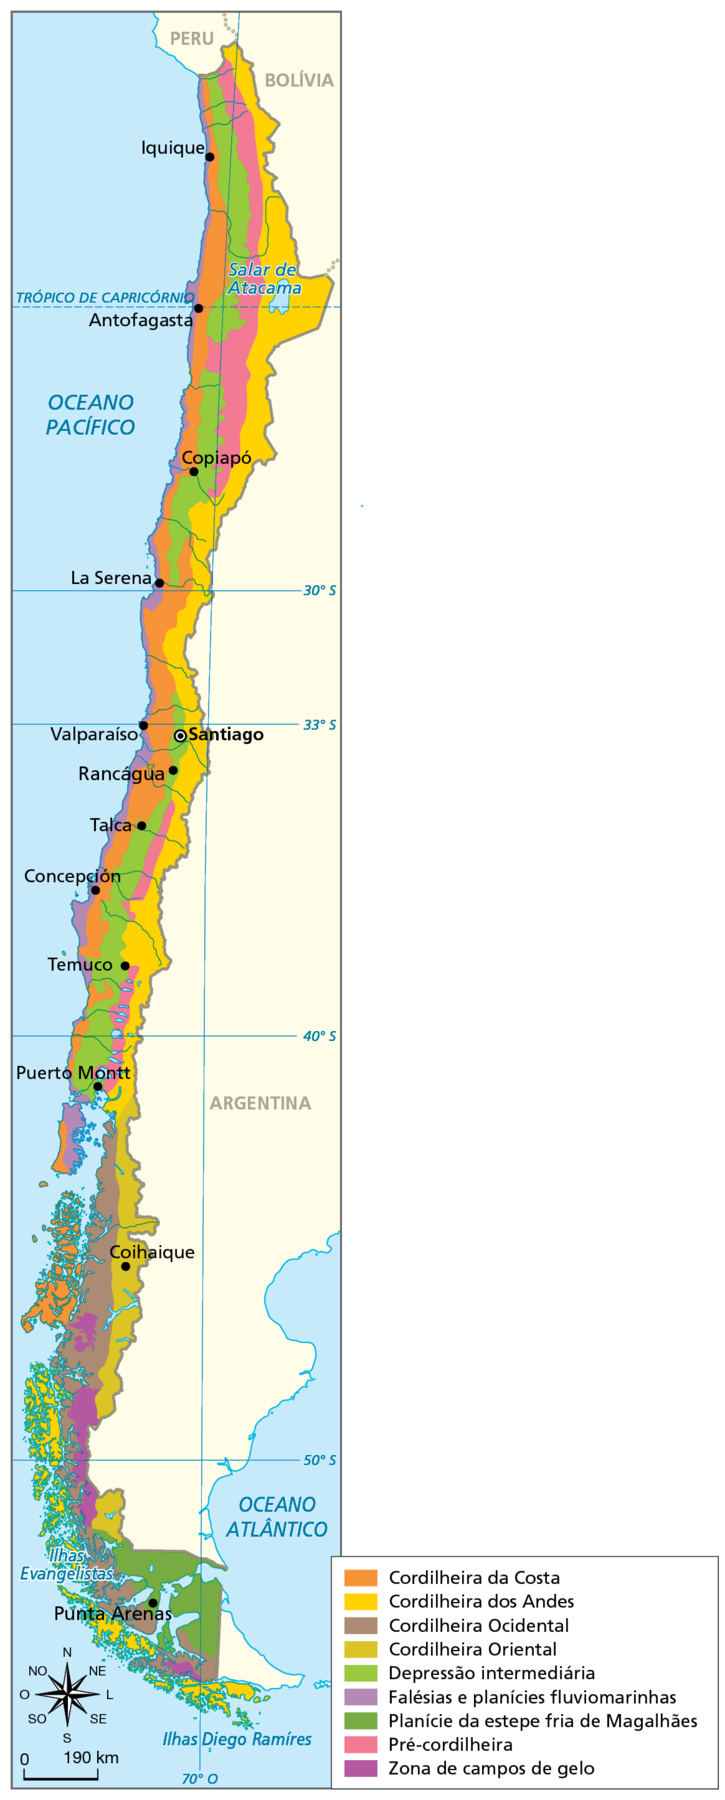 Mapa. Chile: relevo Mapa das unidades de relevo no Chile.  A maior parte do território chileno está situada entre os paralelos 50 graus sul e  o Trópico de Capricórnio. Cordilheira da Costa: extensa faixa de norte a sul do país, próximo à costa oeste. Cordilheira dos Andes: extensa faixa do centro-sul até o norte, na porção leste, junto à fronteira com a Argentina.  Cordilheira Ocidental: faixa no centro-sul do país e trechos no extremo sul, a oeste. Cordilheira Oriental: faixa no centro-sul do país, junto à Argentina.  Depressão intermediária: estreita faixa no norte do país, entre a Cordilheira da Costa a oeste, áreas de Pré-Cordilheira e Cordilheira dos Andes a leste.  Falésias e planícies fluviomarinhas: estreita faixa na costa oeste, no sentido norte-sul.  Planície da estepe fria de Magalhães: área no extremo sul do país. Pré-cordilheira: faixas no centro-sul e no centro-norte do país.  Zona de campos de gelo: sul e extremo sul do país. Cidades em destaque: Coihaique, Punta Arenas, Puerto Montt, Temuco, Concepción, Talca, Rancágua, Santiago, Valparaíso, La Serena, Copiapó, Antofagasta, Iquique.  À esquerda, rosa dos ventos e escala de 0 a 190 quilômetros.